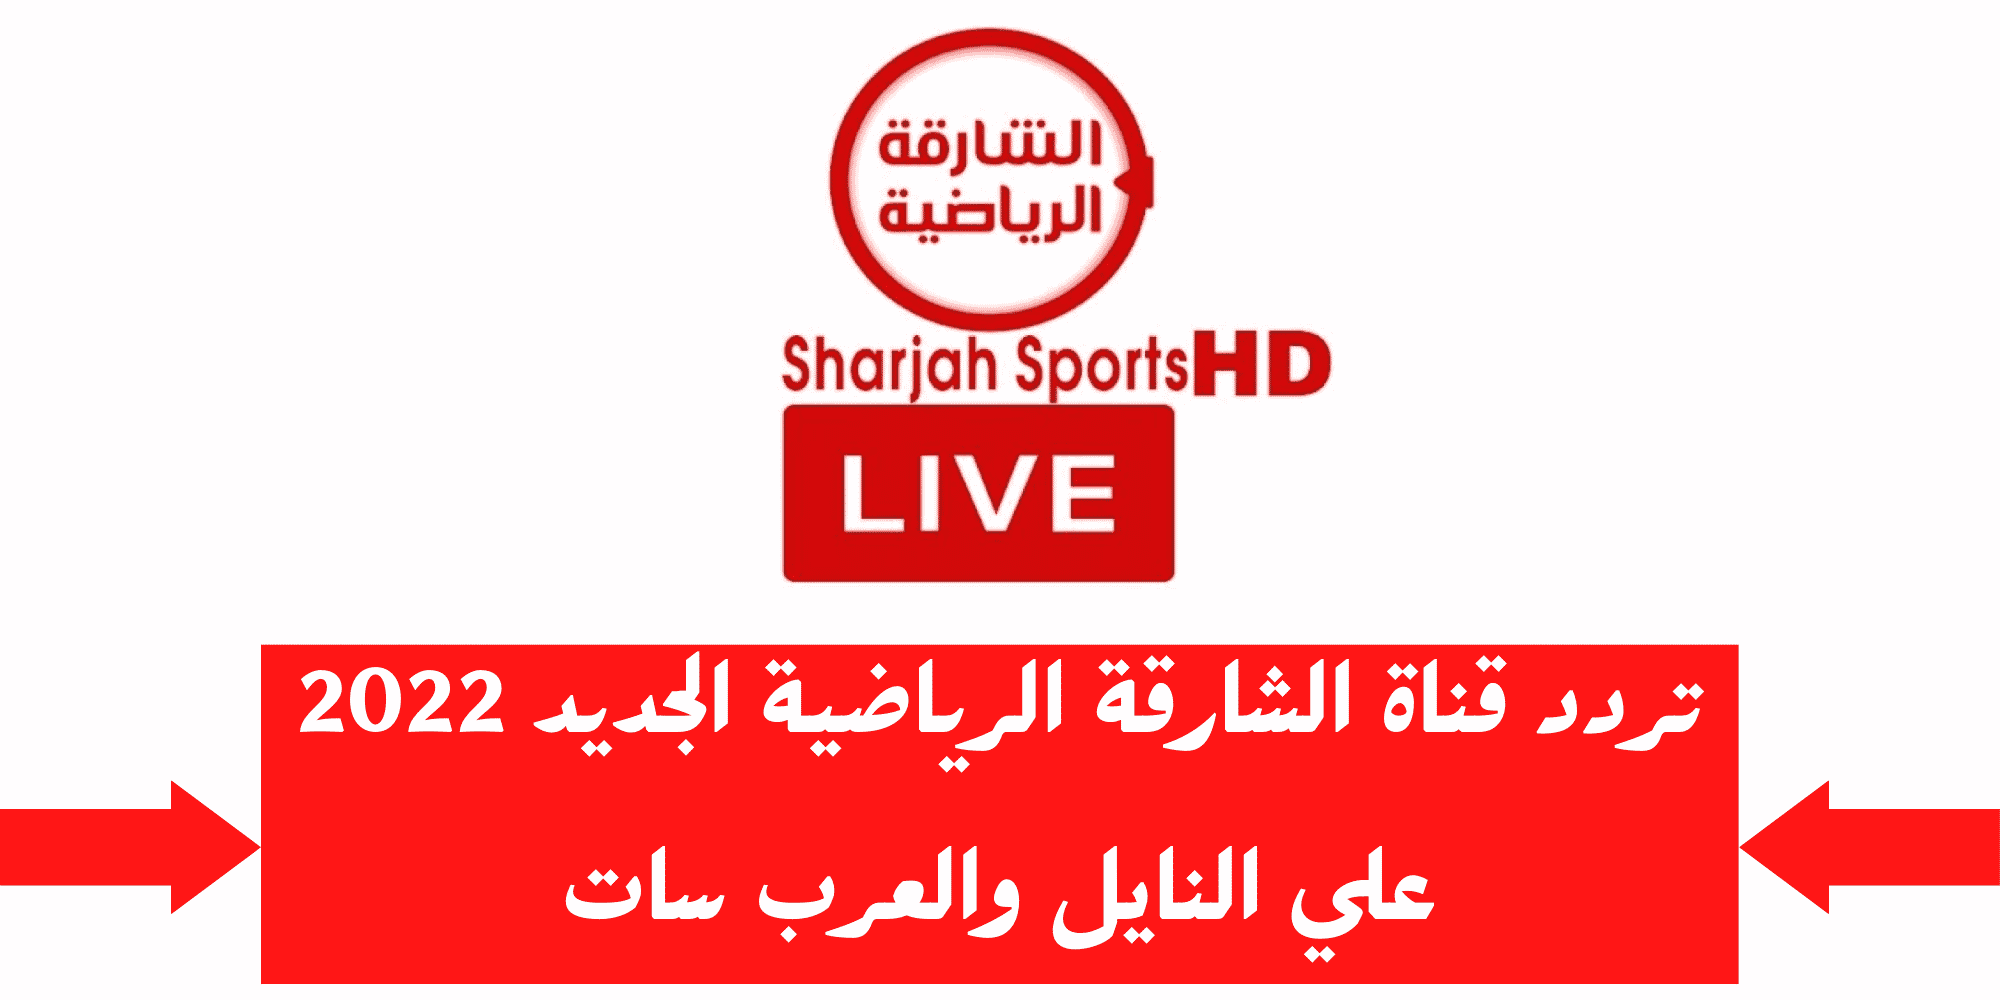 ضبط تردد قناة الشارقة الرياضية 2022 الجديد Sharjah Sport Tv على الأقمار الصناعية نايل سات وعرب سات